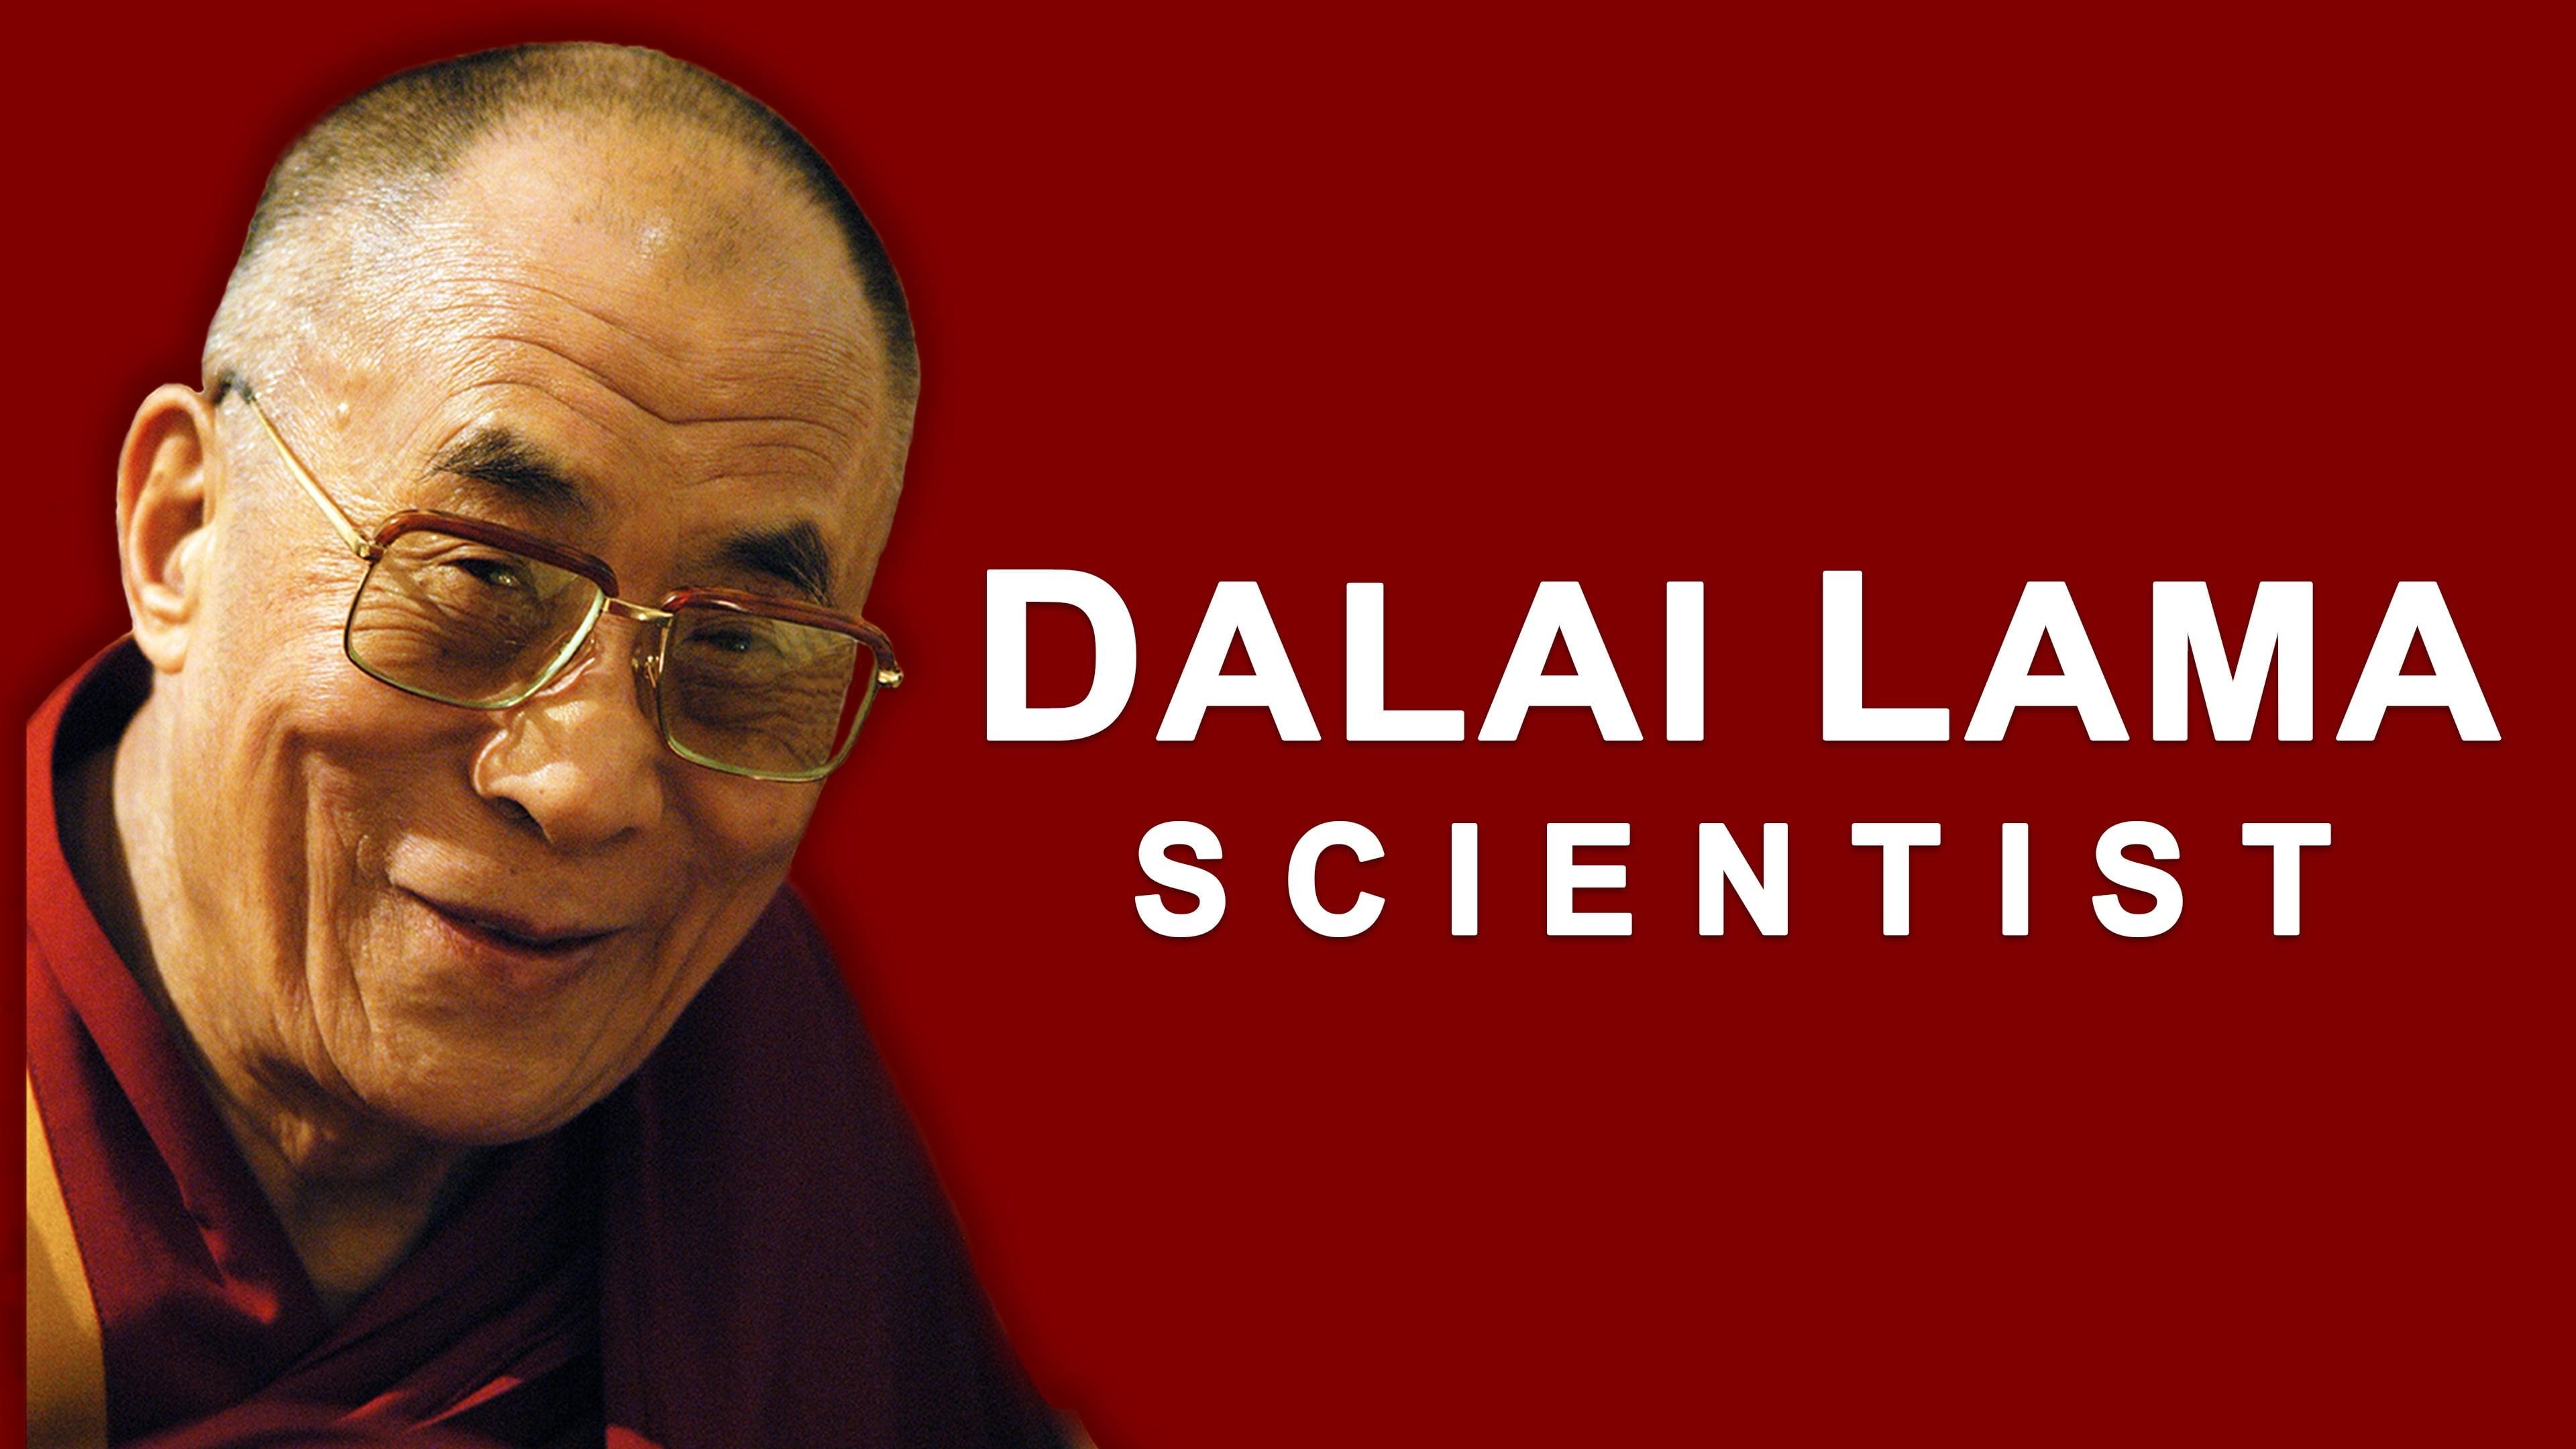 The Dalai Lama: Scientist backdrop